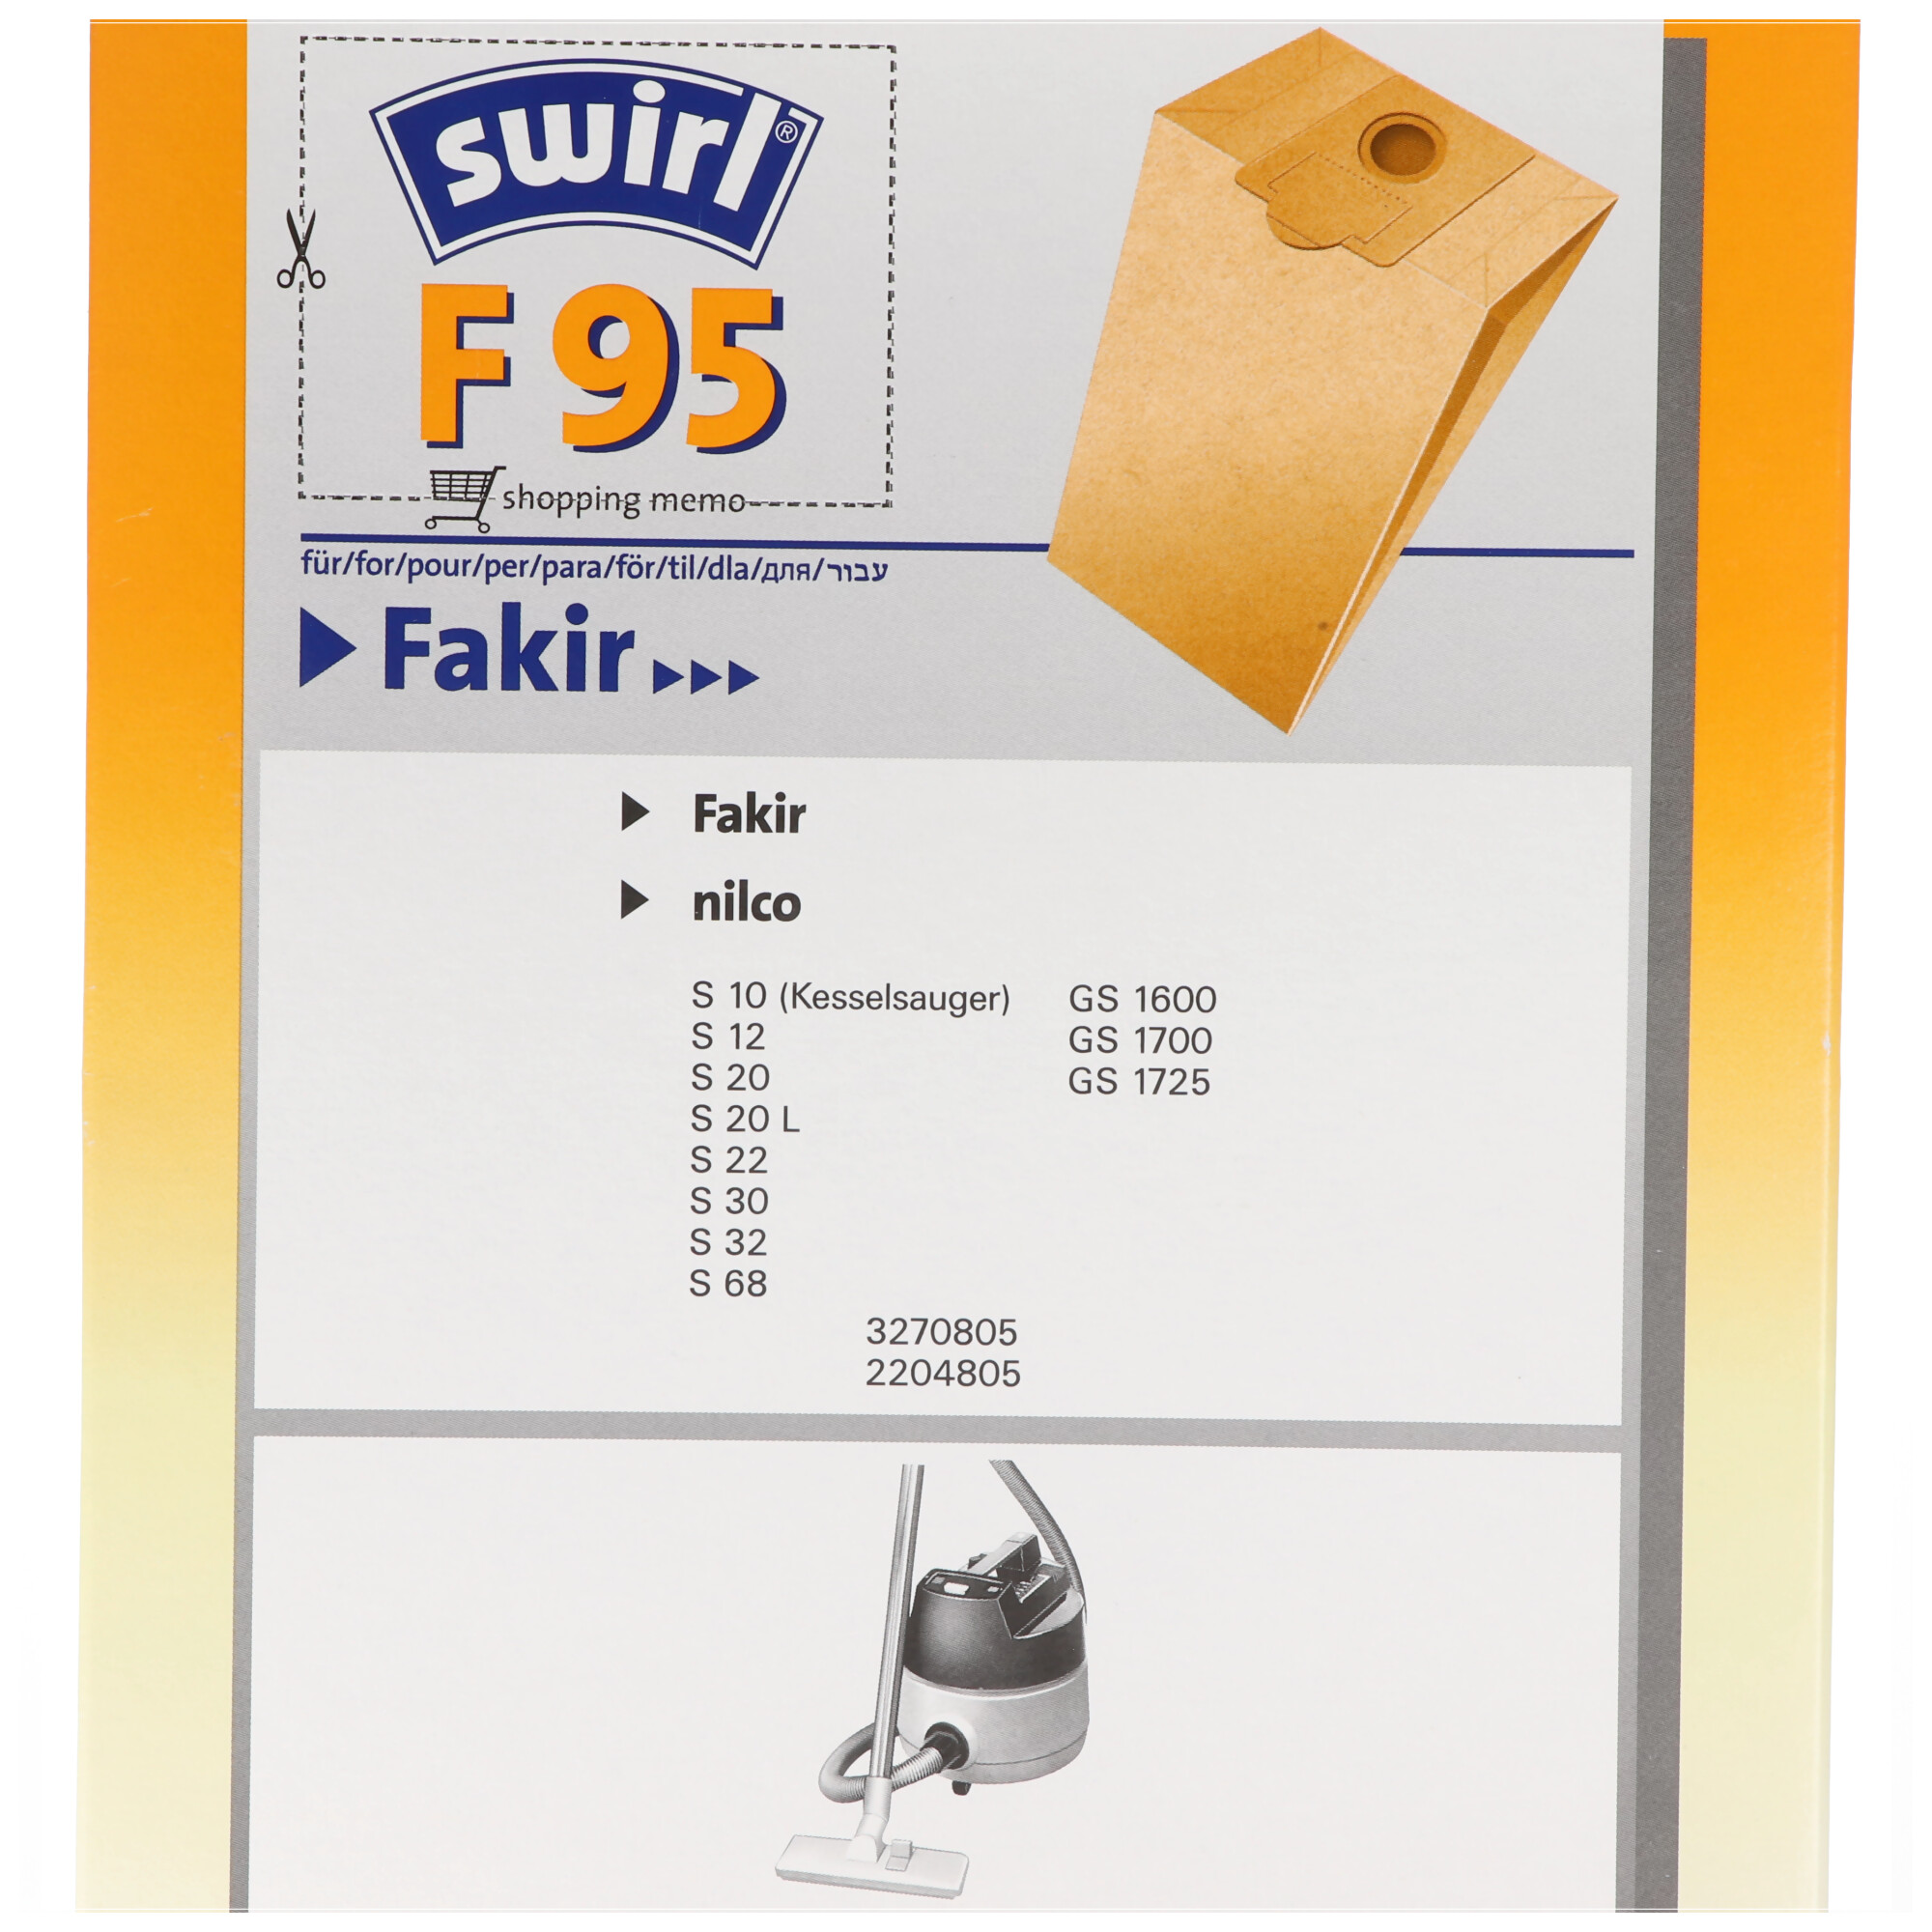 Swirl Staubsaugerbeutel F95 Classic aus Spezialpapier für Fakir und nilco Staubsauger